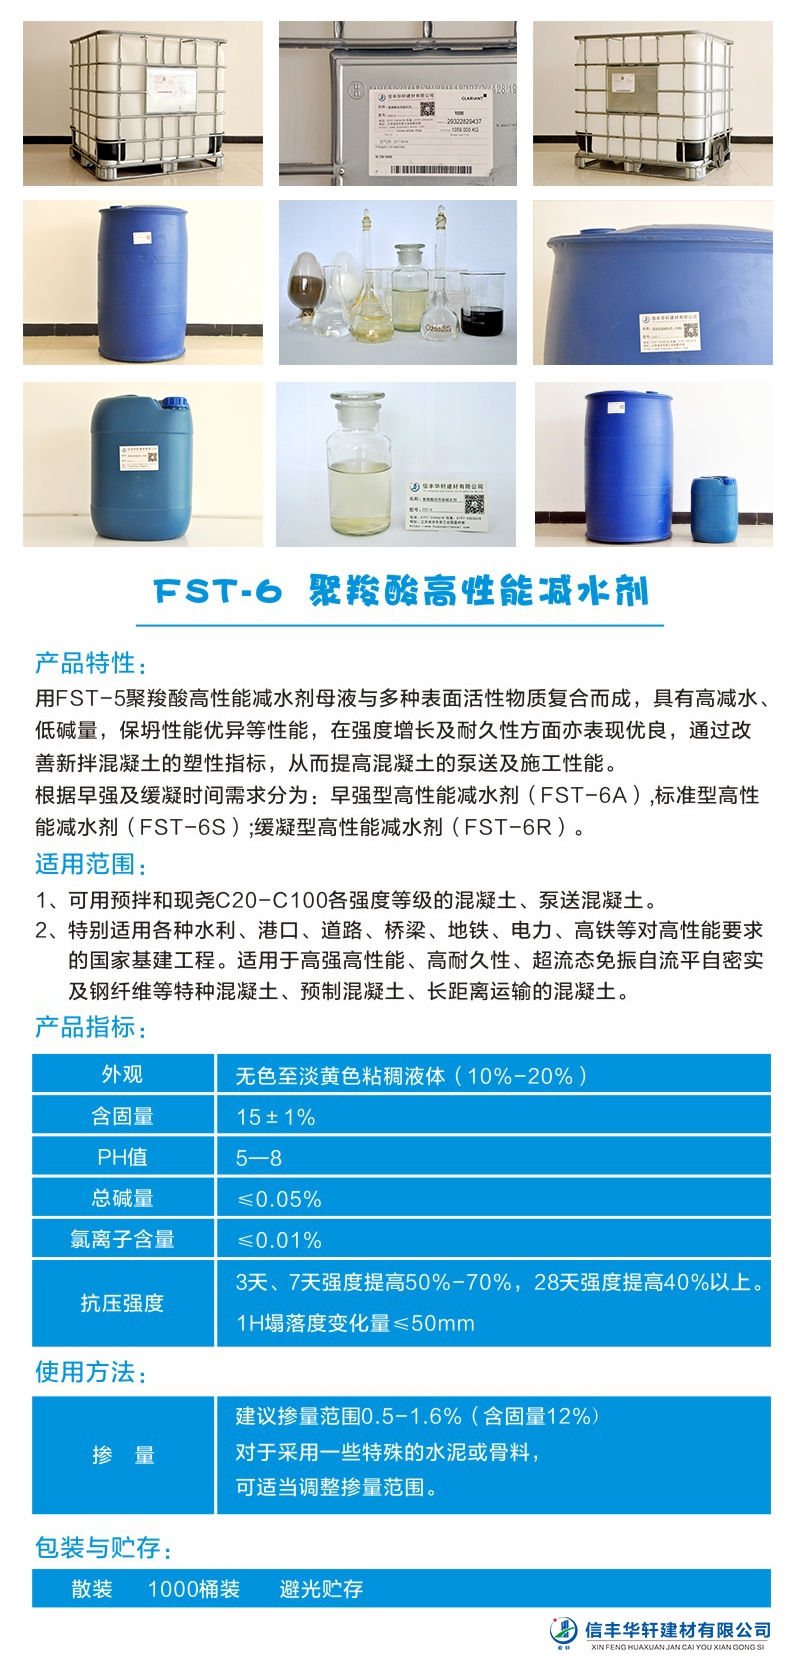 FST-6 聚羧酸高性能减水剂